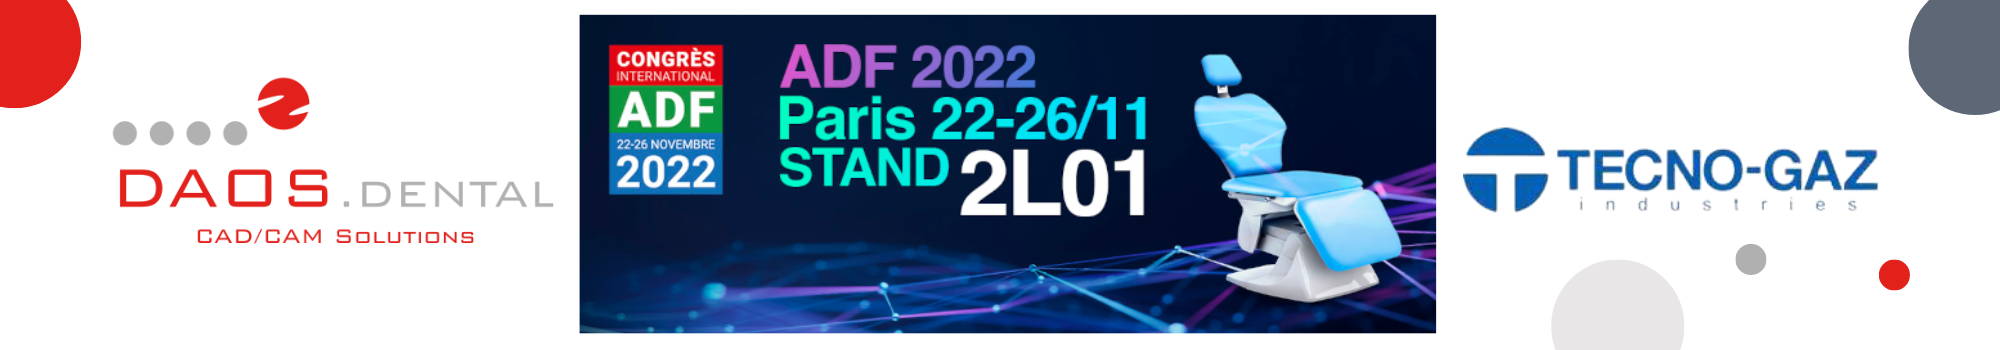 ADF 2022 PARIS